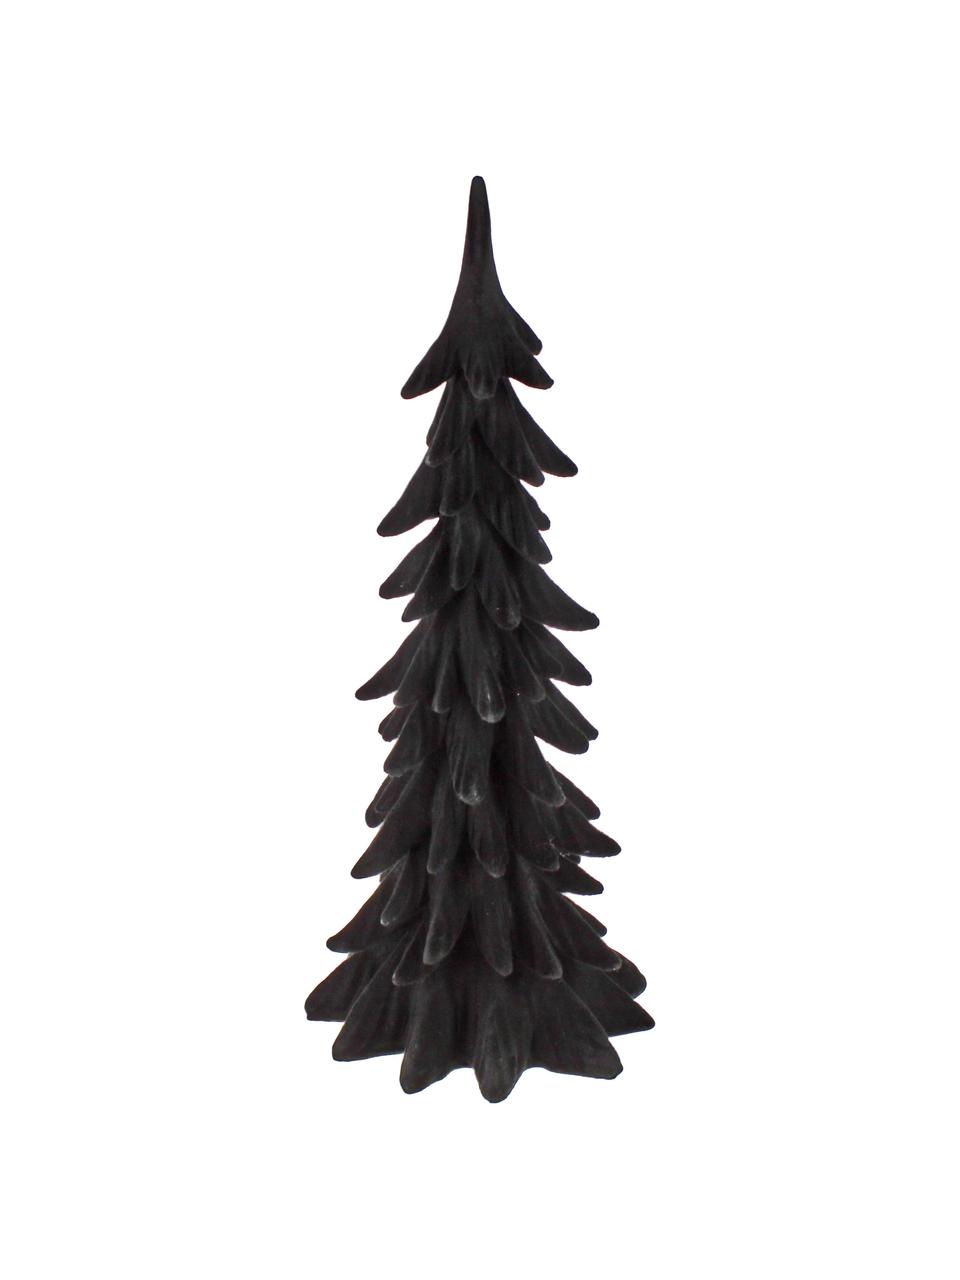 Sapin de Noël décoratif noir Tanne, Polyrésine, Noir, larg. 19 x haut. 41 cm